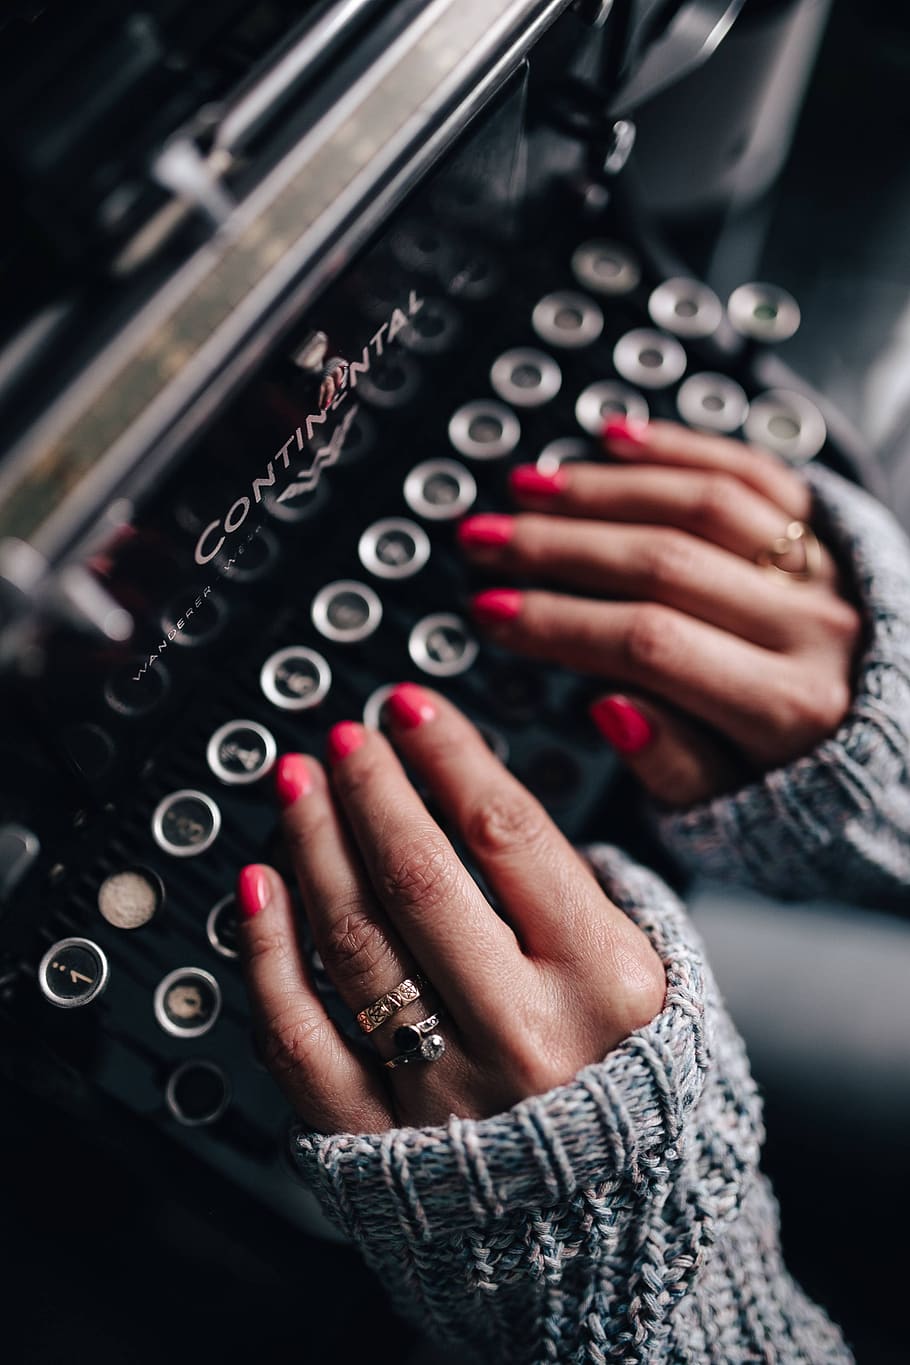 female, vintage, office, desk, typewriter, typewriting, old, typing, retro, pink nails